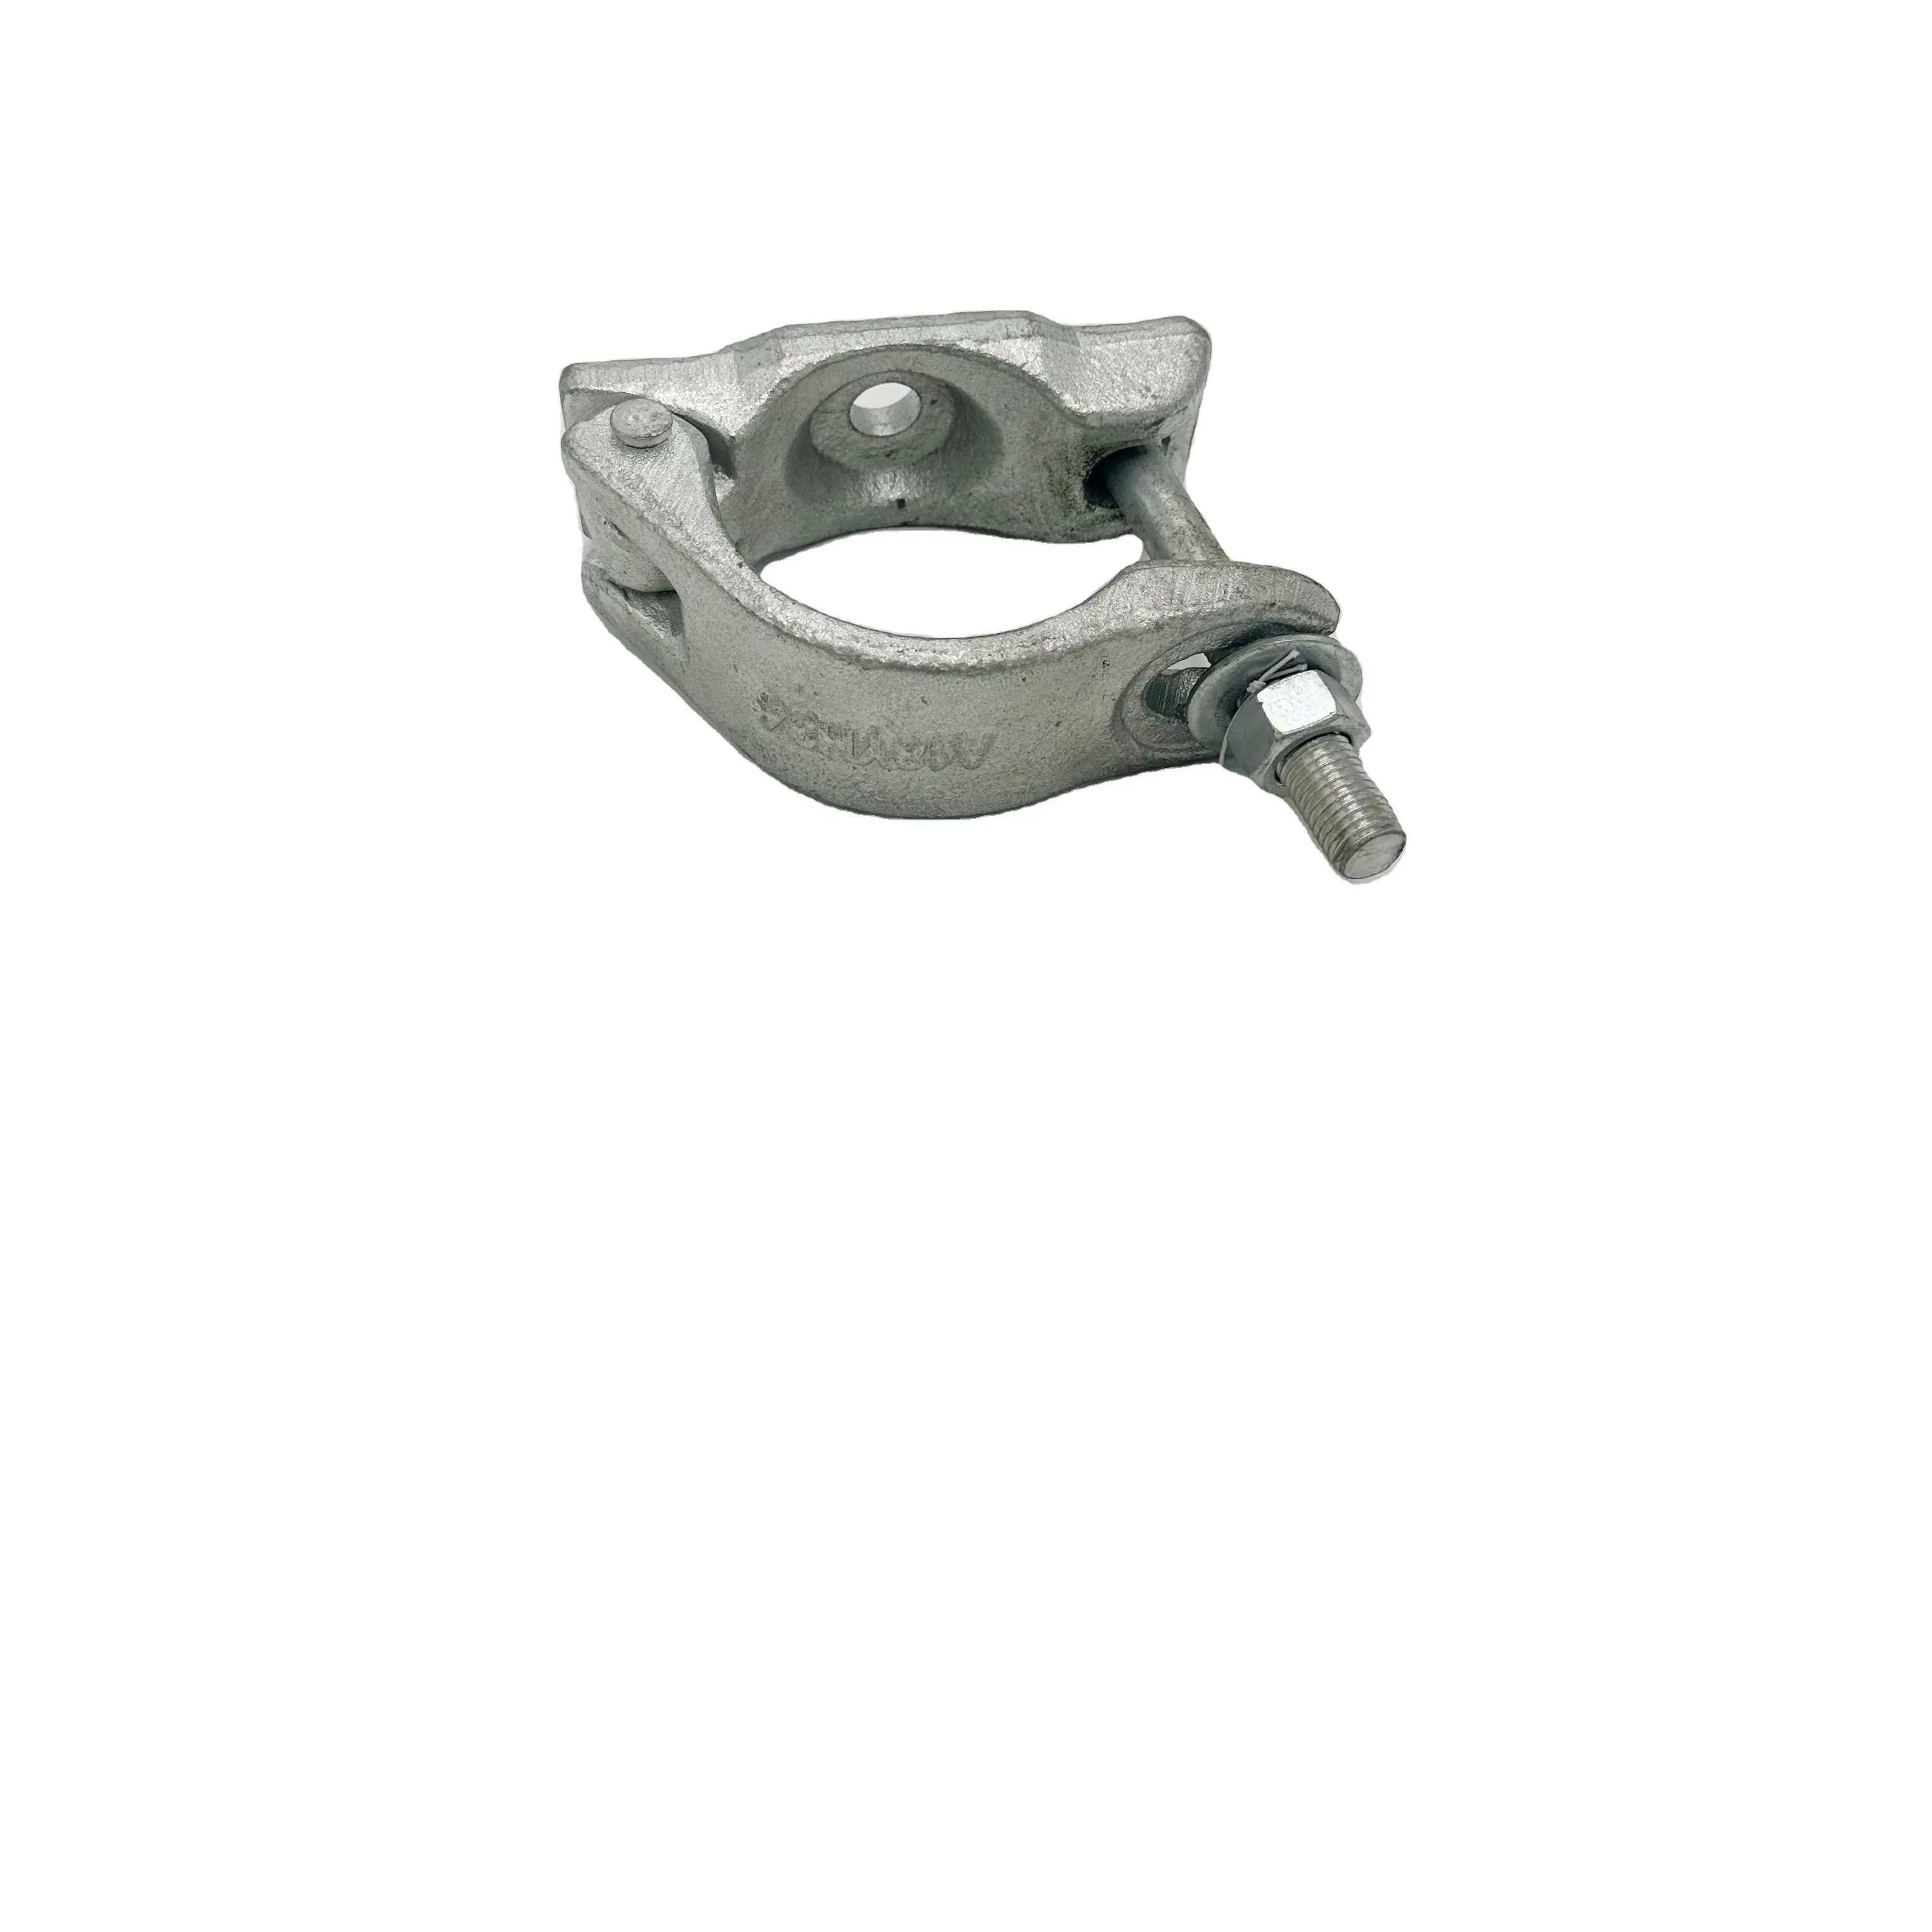 Hochwertige Gerüst kupplung mit Gleit rohrs chelle 42-48mm und Zubehör für Gerüst befestigungen/Gerüste